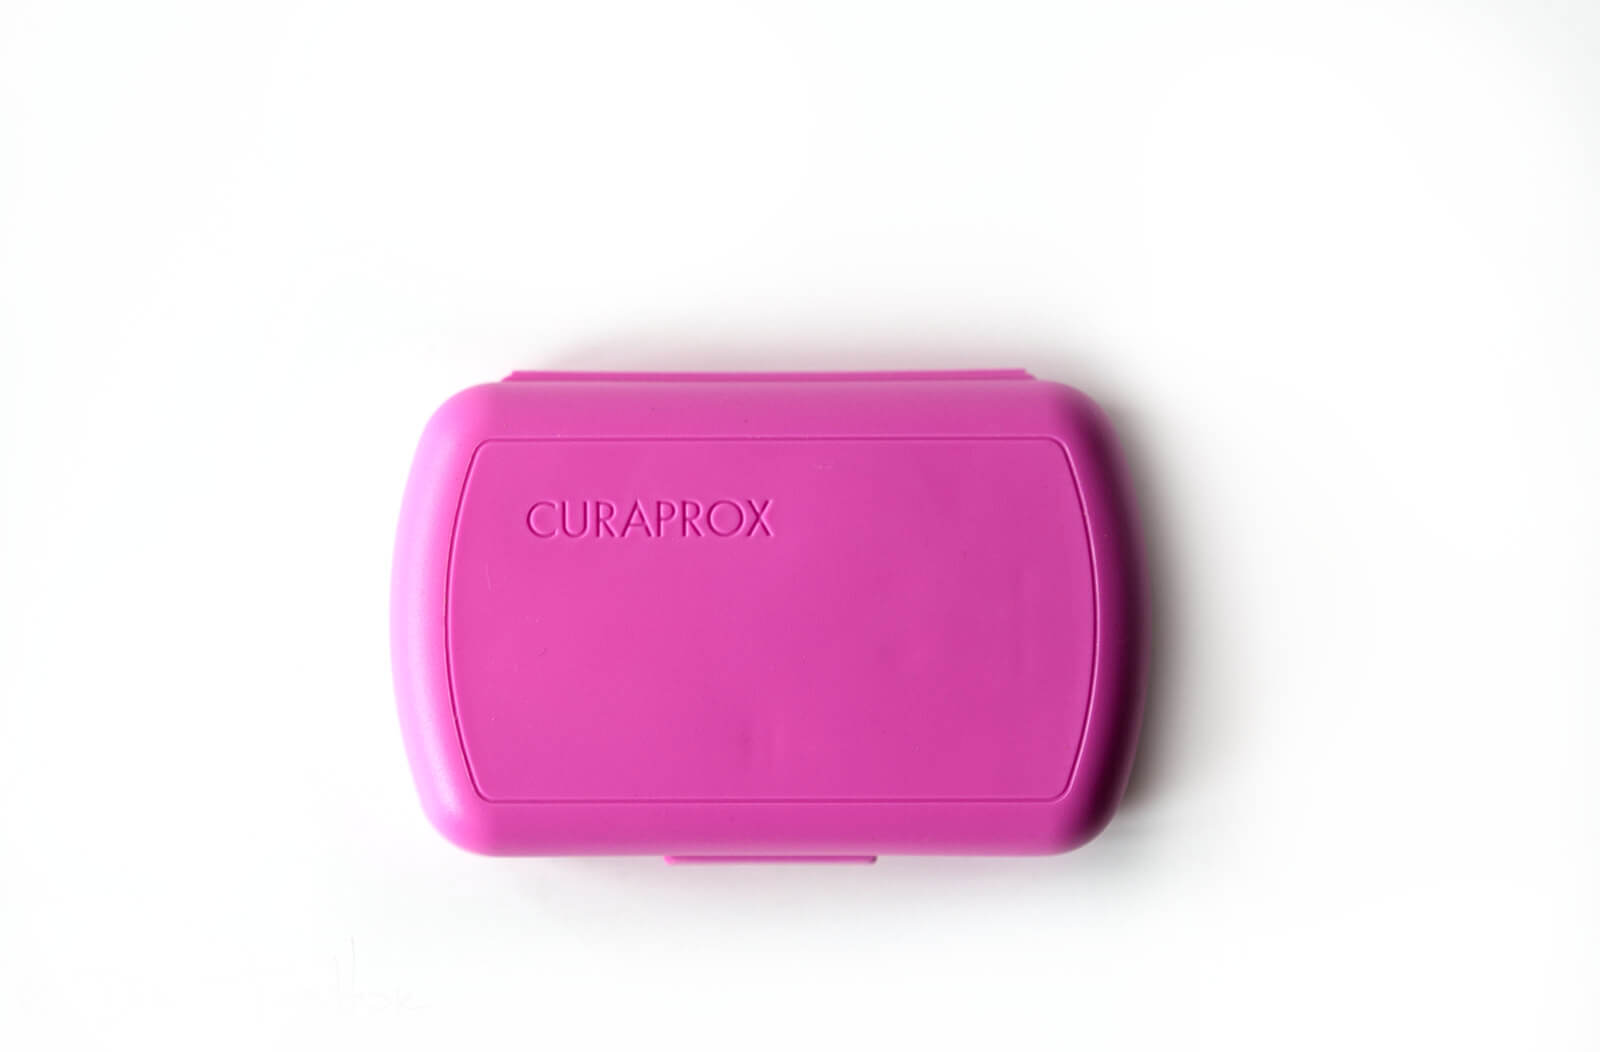 Curaprox - Stylisch bunte und innovative Zahnpflege - Alles für die perfekte Mundpflege 10